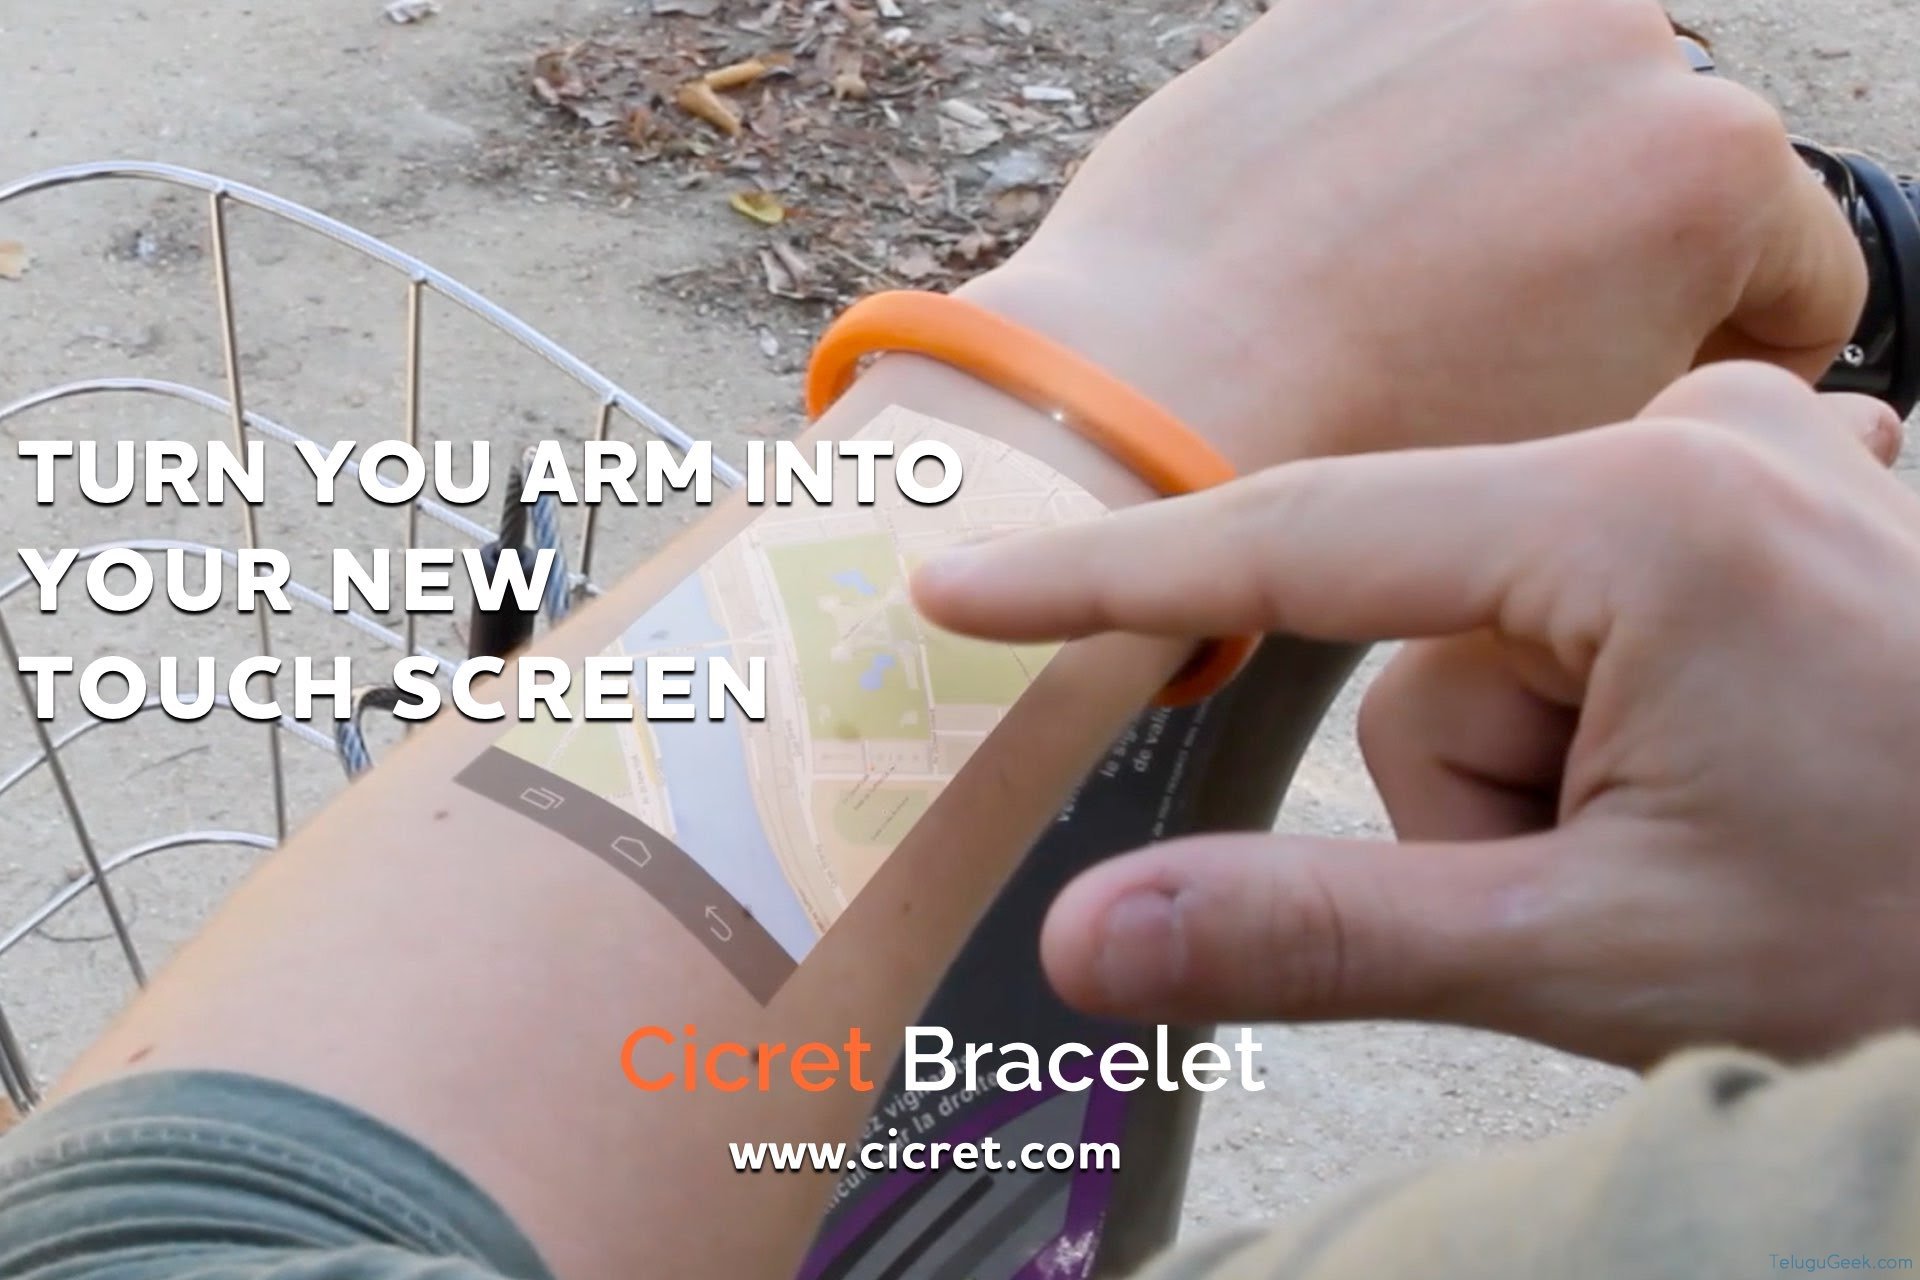 Cicret Bracelet: మీ చేతినే ఫోనులా మారుస్తుంది